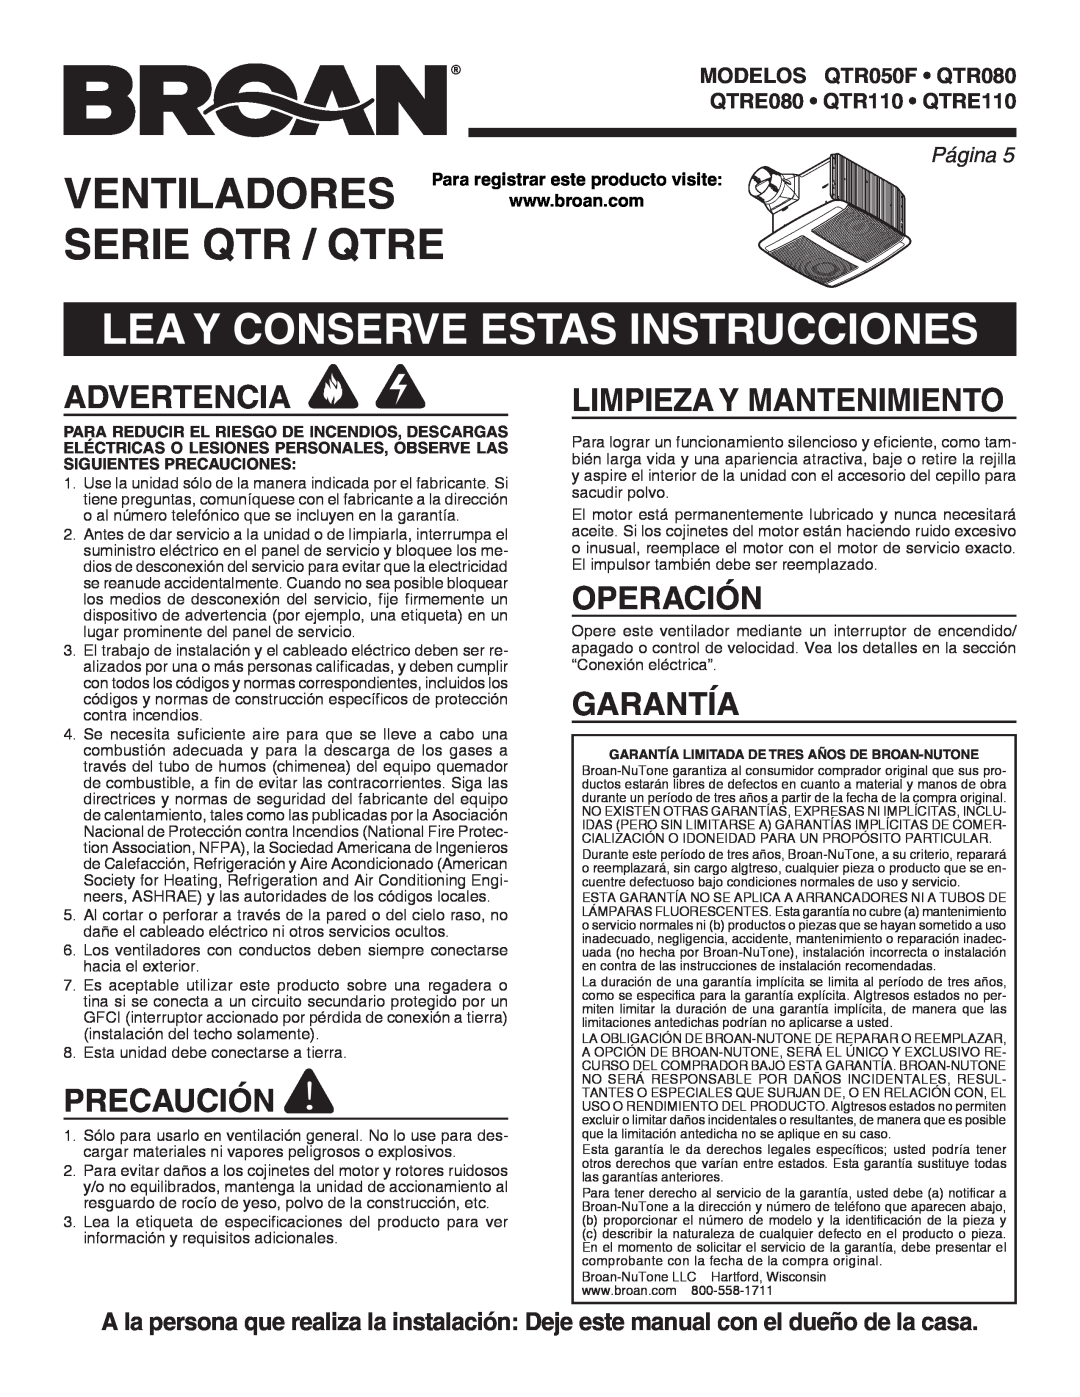 Broan QTRE110 manual Ventiladores, Serie Qtr / Qtre, Lea Y Conserve Estas Instrucciones, Advertencia, Precaución, Operación 